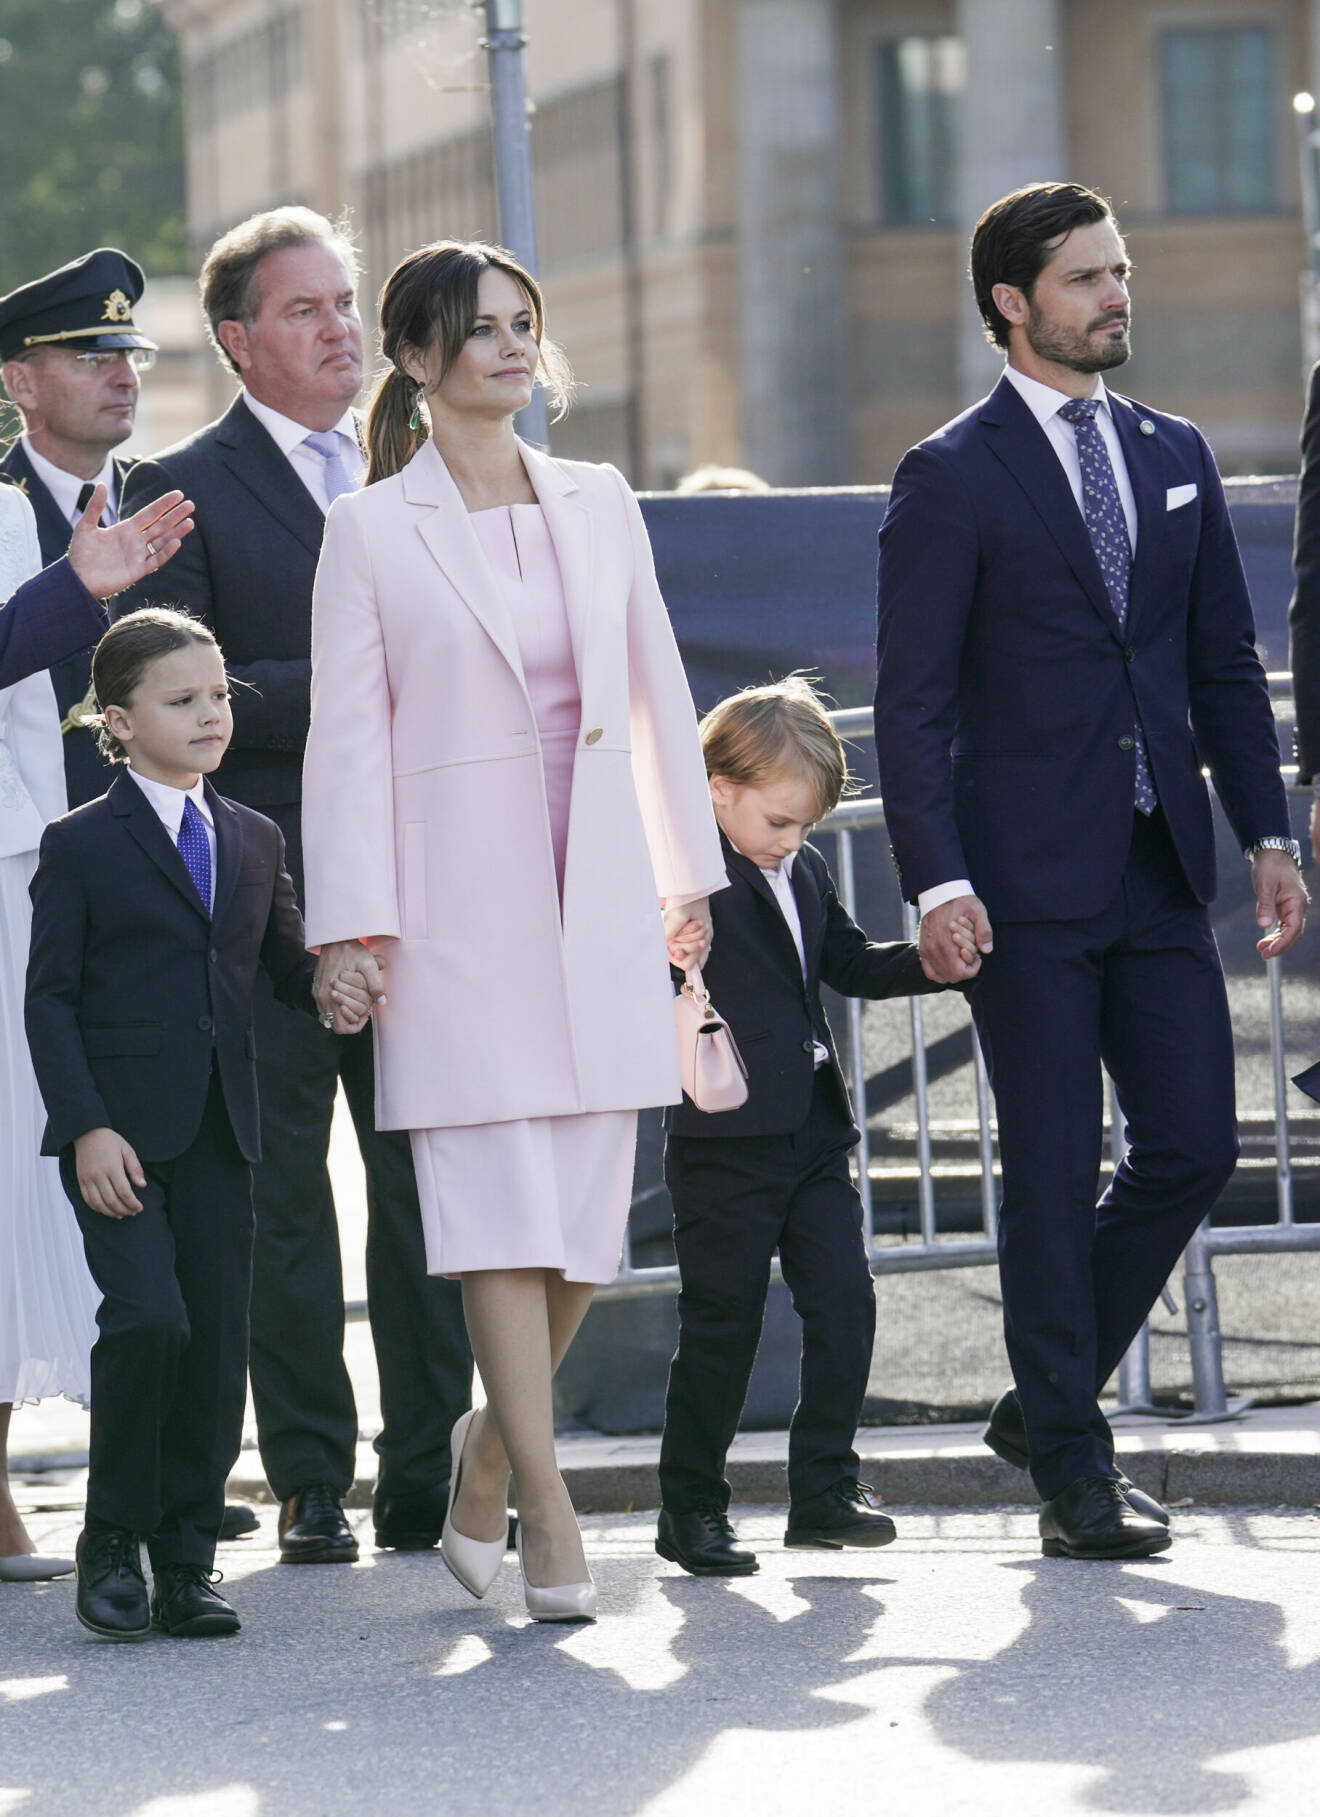 Prinsessan Madeleine, Christopher O'Neill, prinsessan Sofia och prins Carl Philip med barnen prins Alexander och prins Gabriel anländer till jubileumskonserten som Stockholm stad arrangerar på Norrbro i samband med kung Carl XVI Gustafs 50-årsjubileum på tronen.